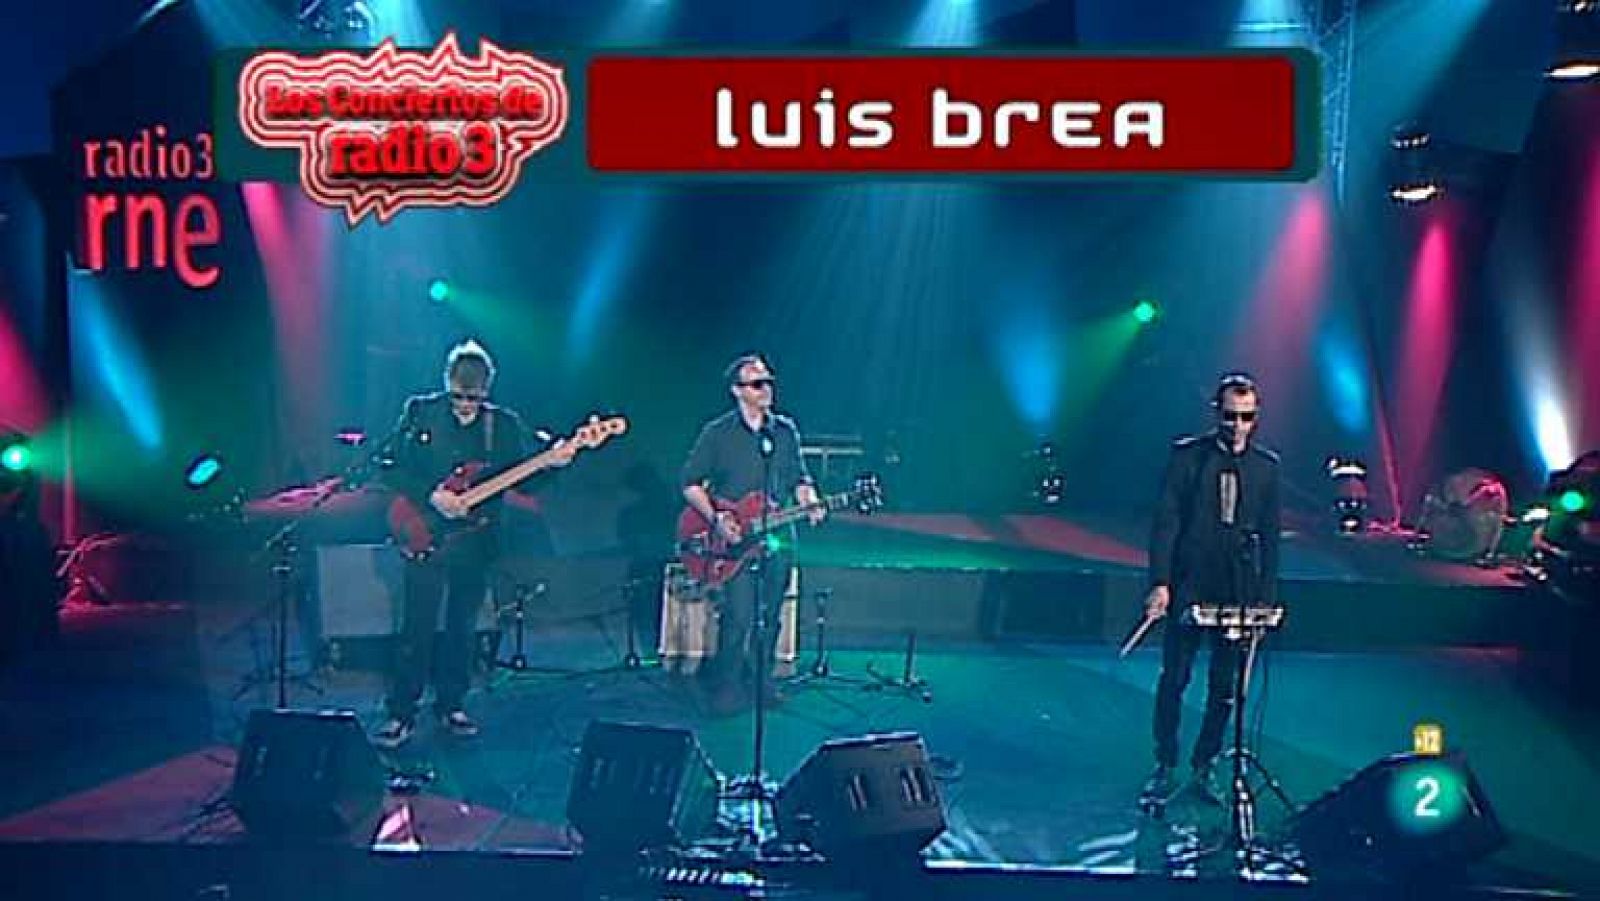 Los conciertos de Radio 3 - Luis Brea - Ver ahora